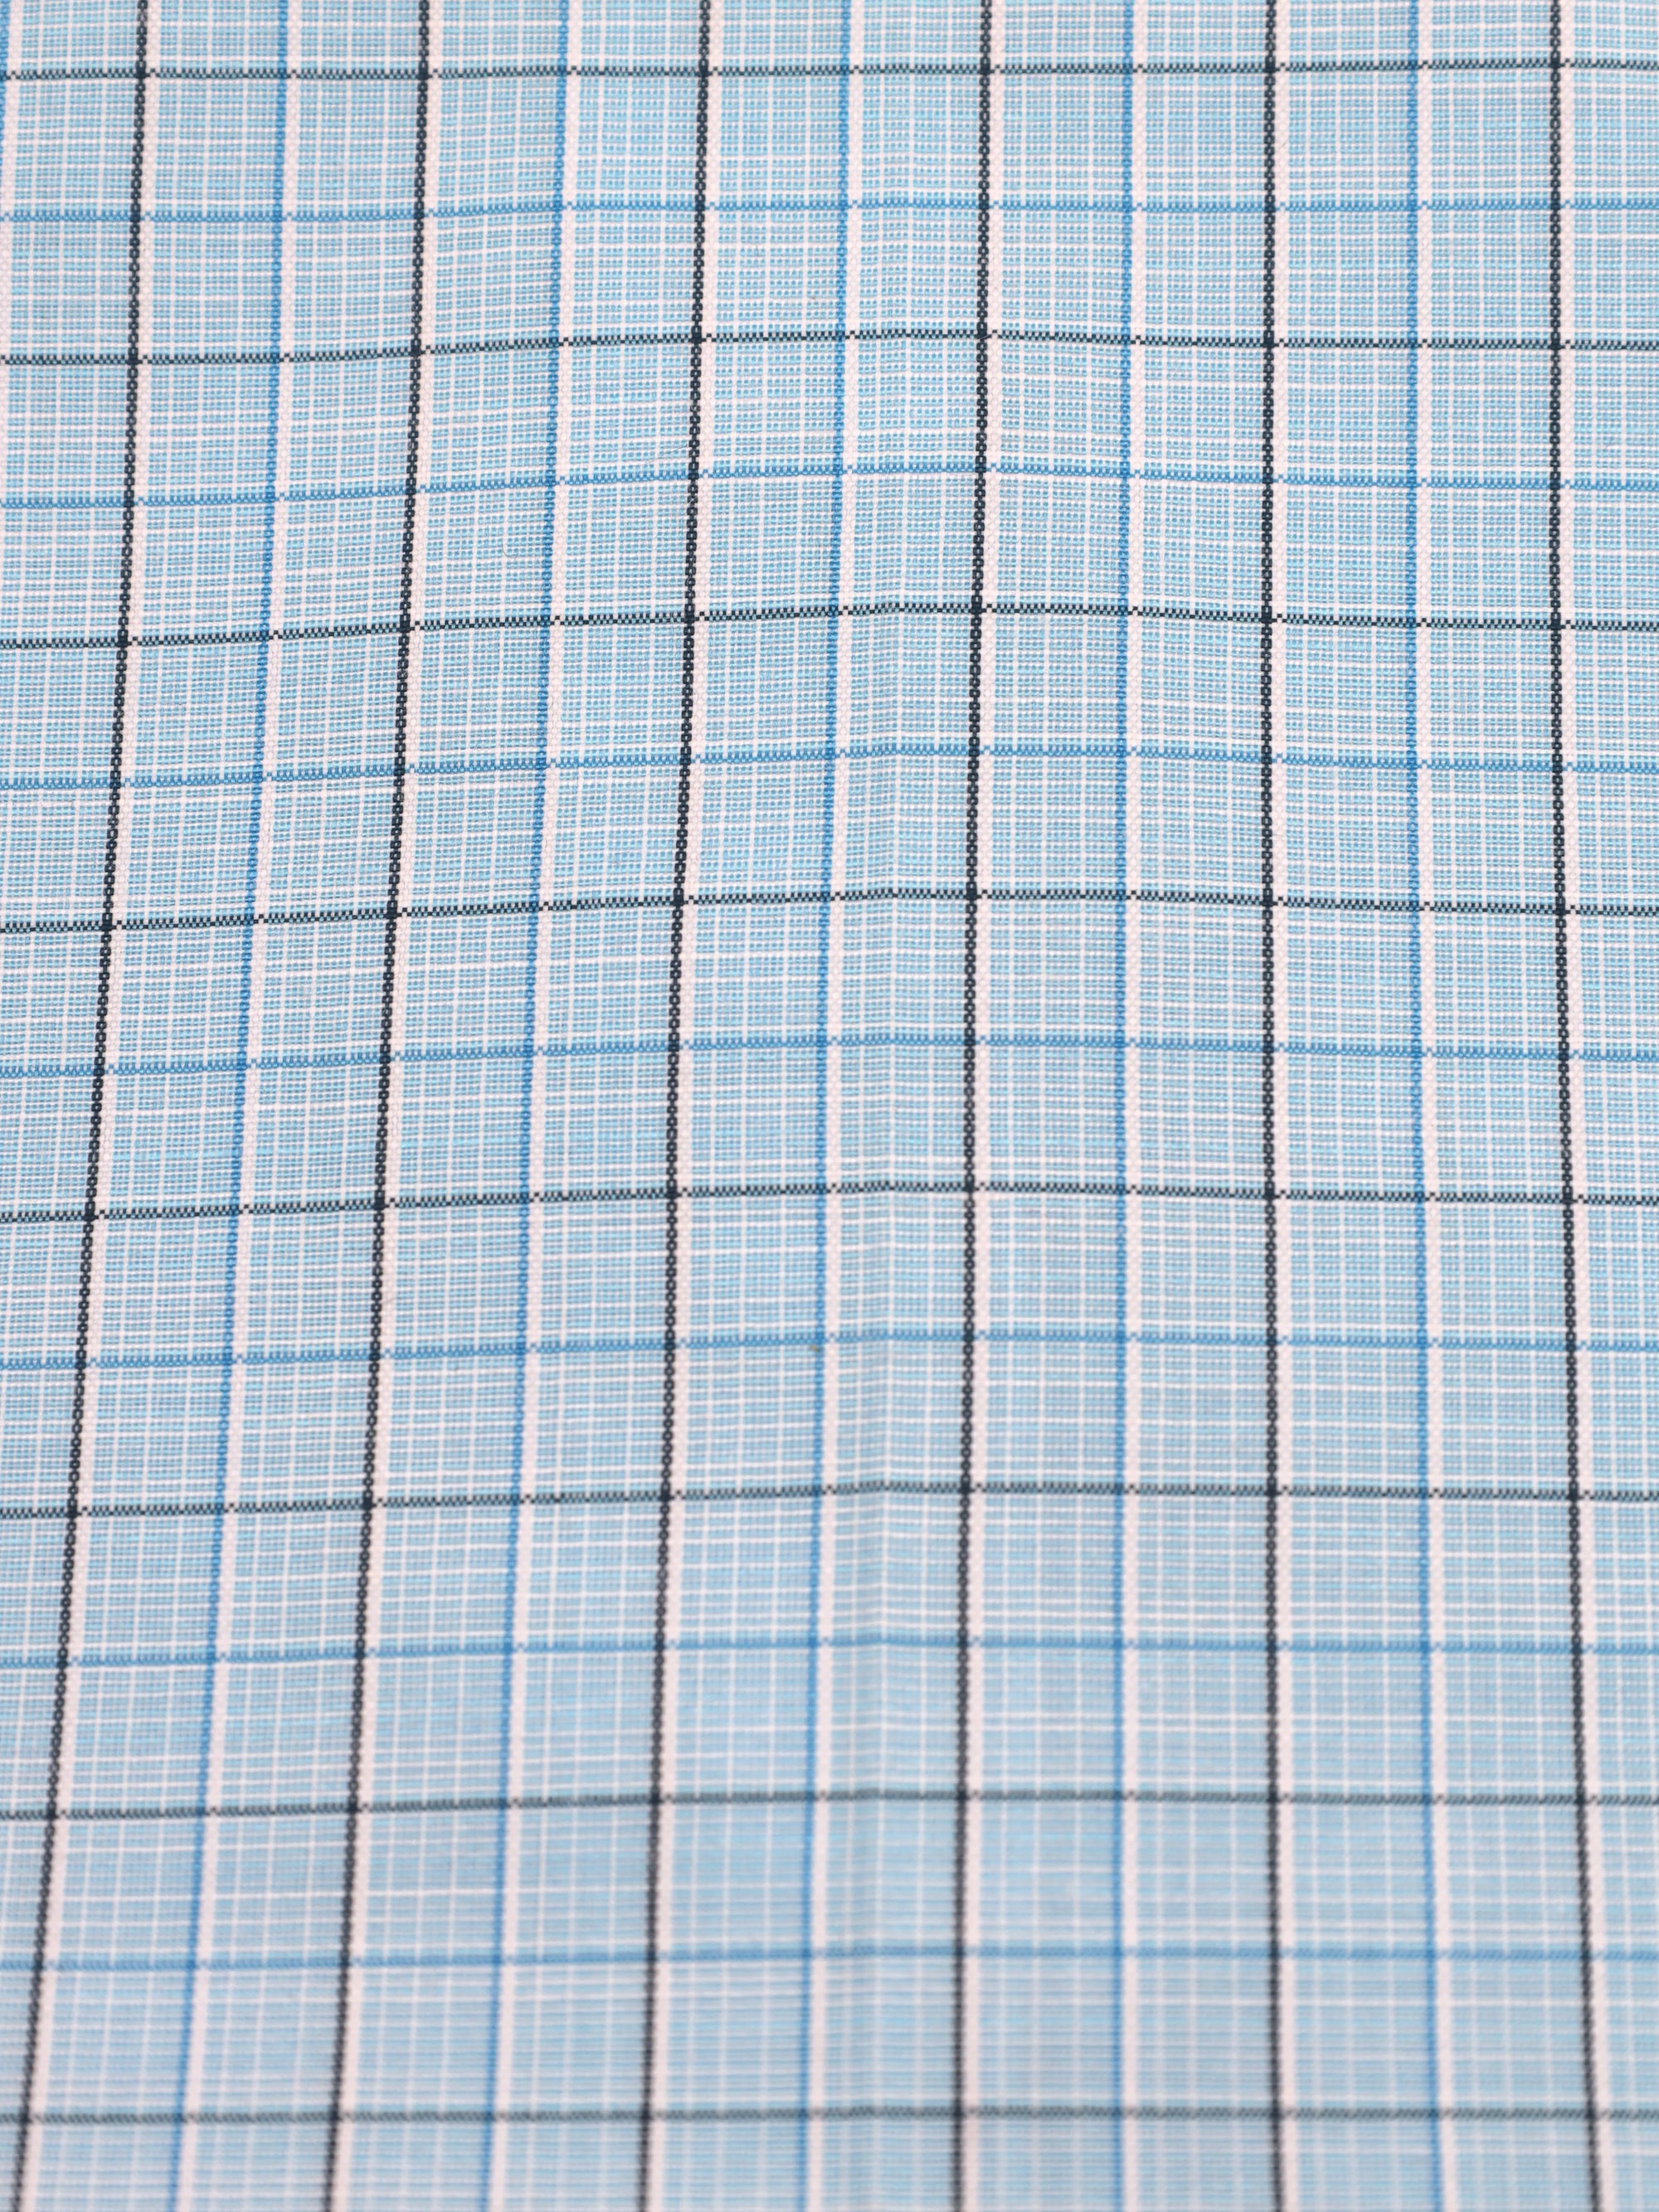 Sky Blue With Blue Plaid Checks Premium Cotton Shirt